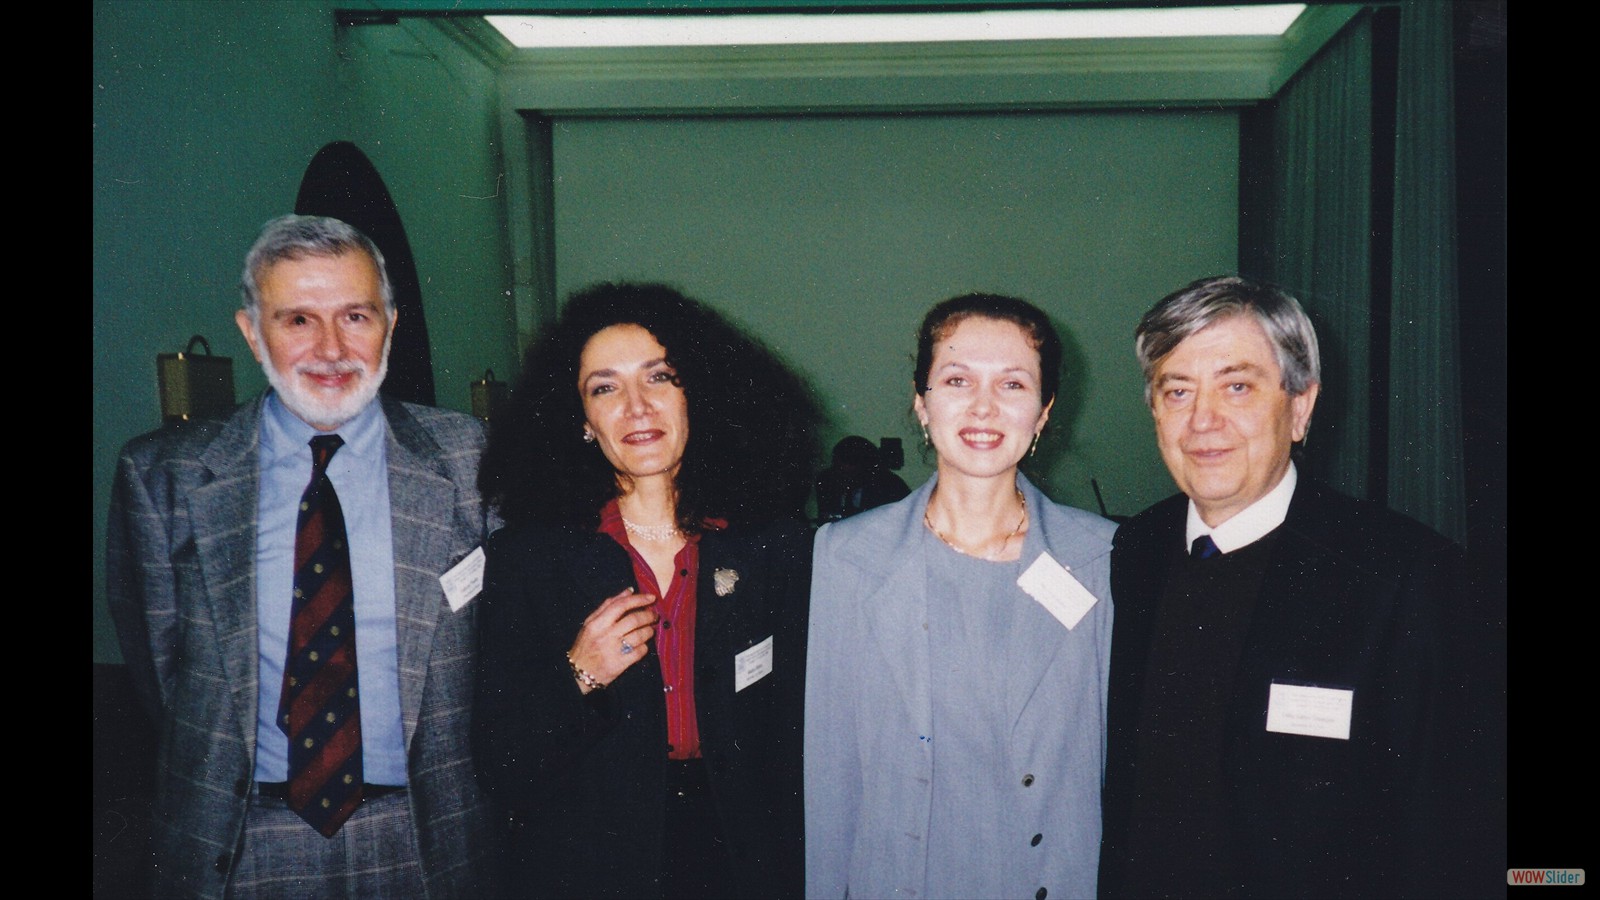 AICAT Conference Camogli 13-16 December 2000 (from the left: Ferloni, Badea, Mucha, Della Gatta)